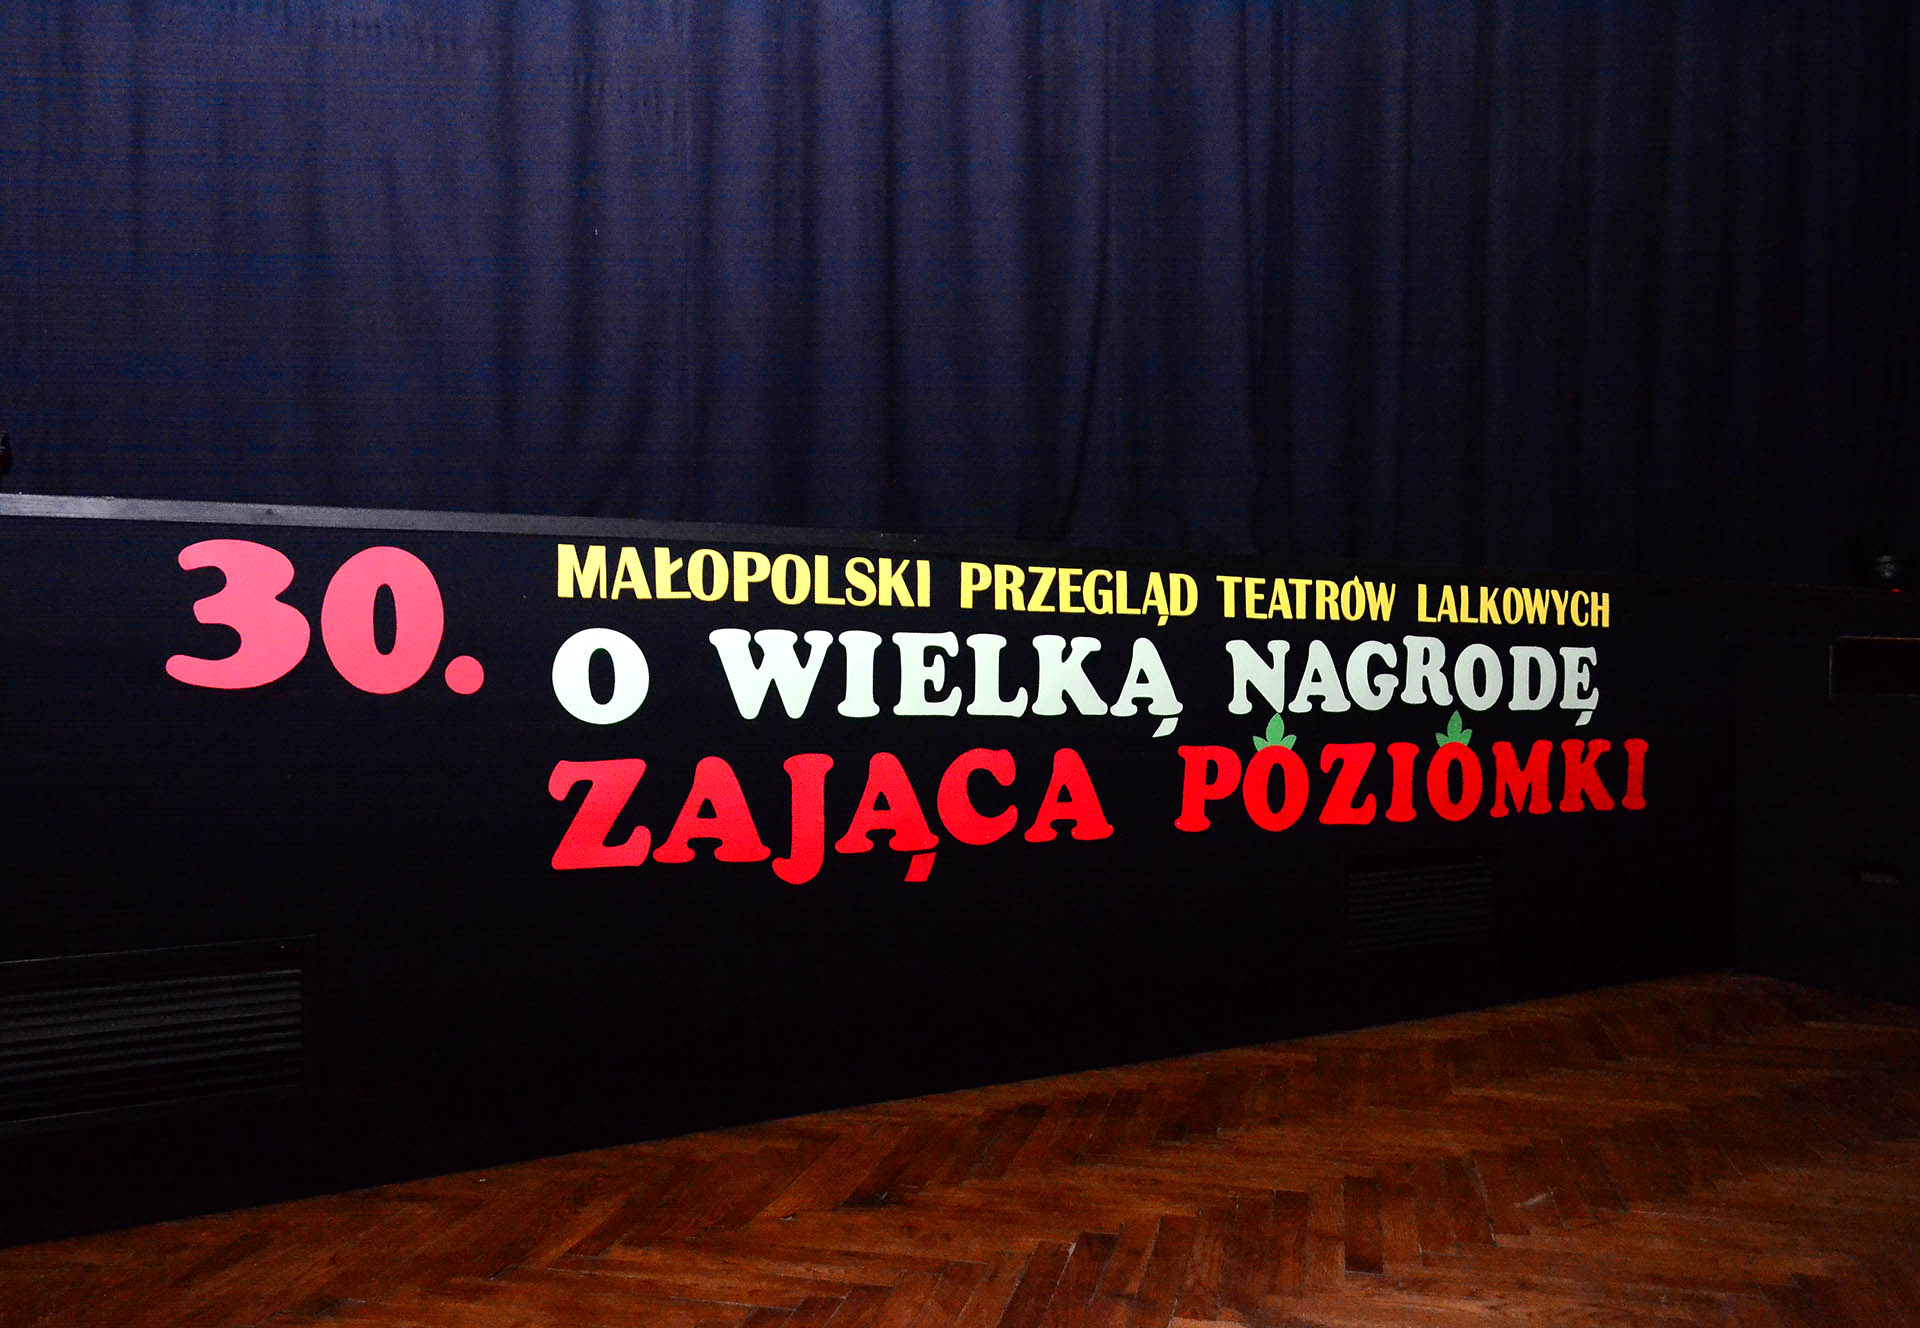 Relacja z 30. Małopolskiego Przeglądu Teatrów Lalkowych o Wielką Nagrodę Zająca Poziomki